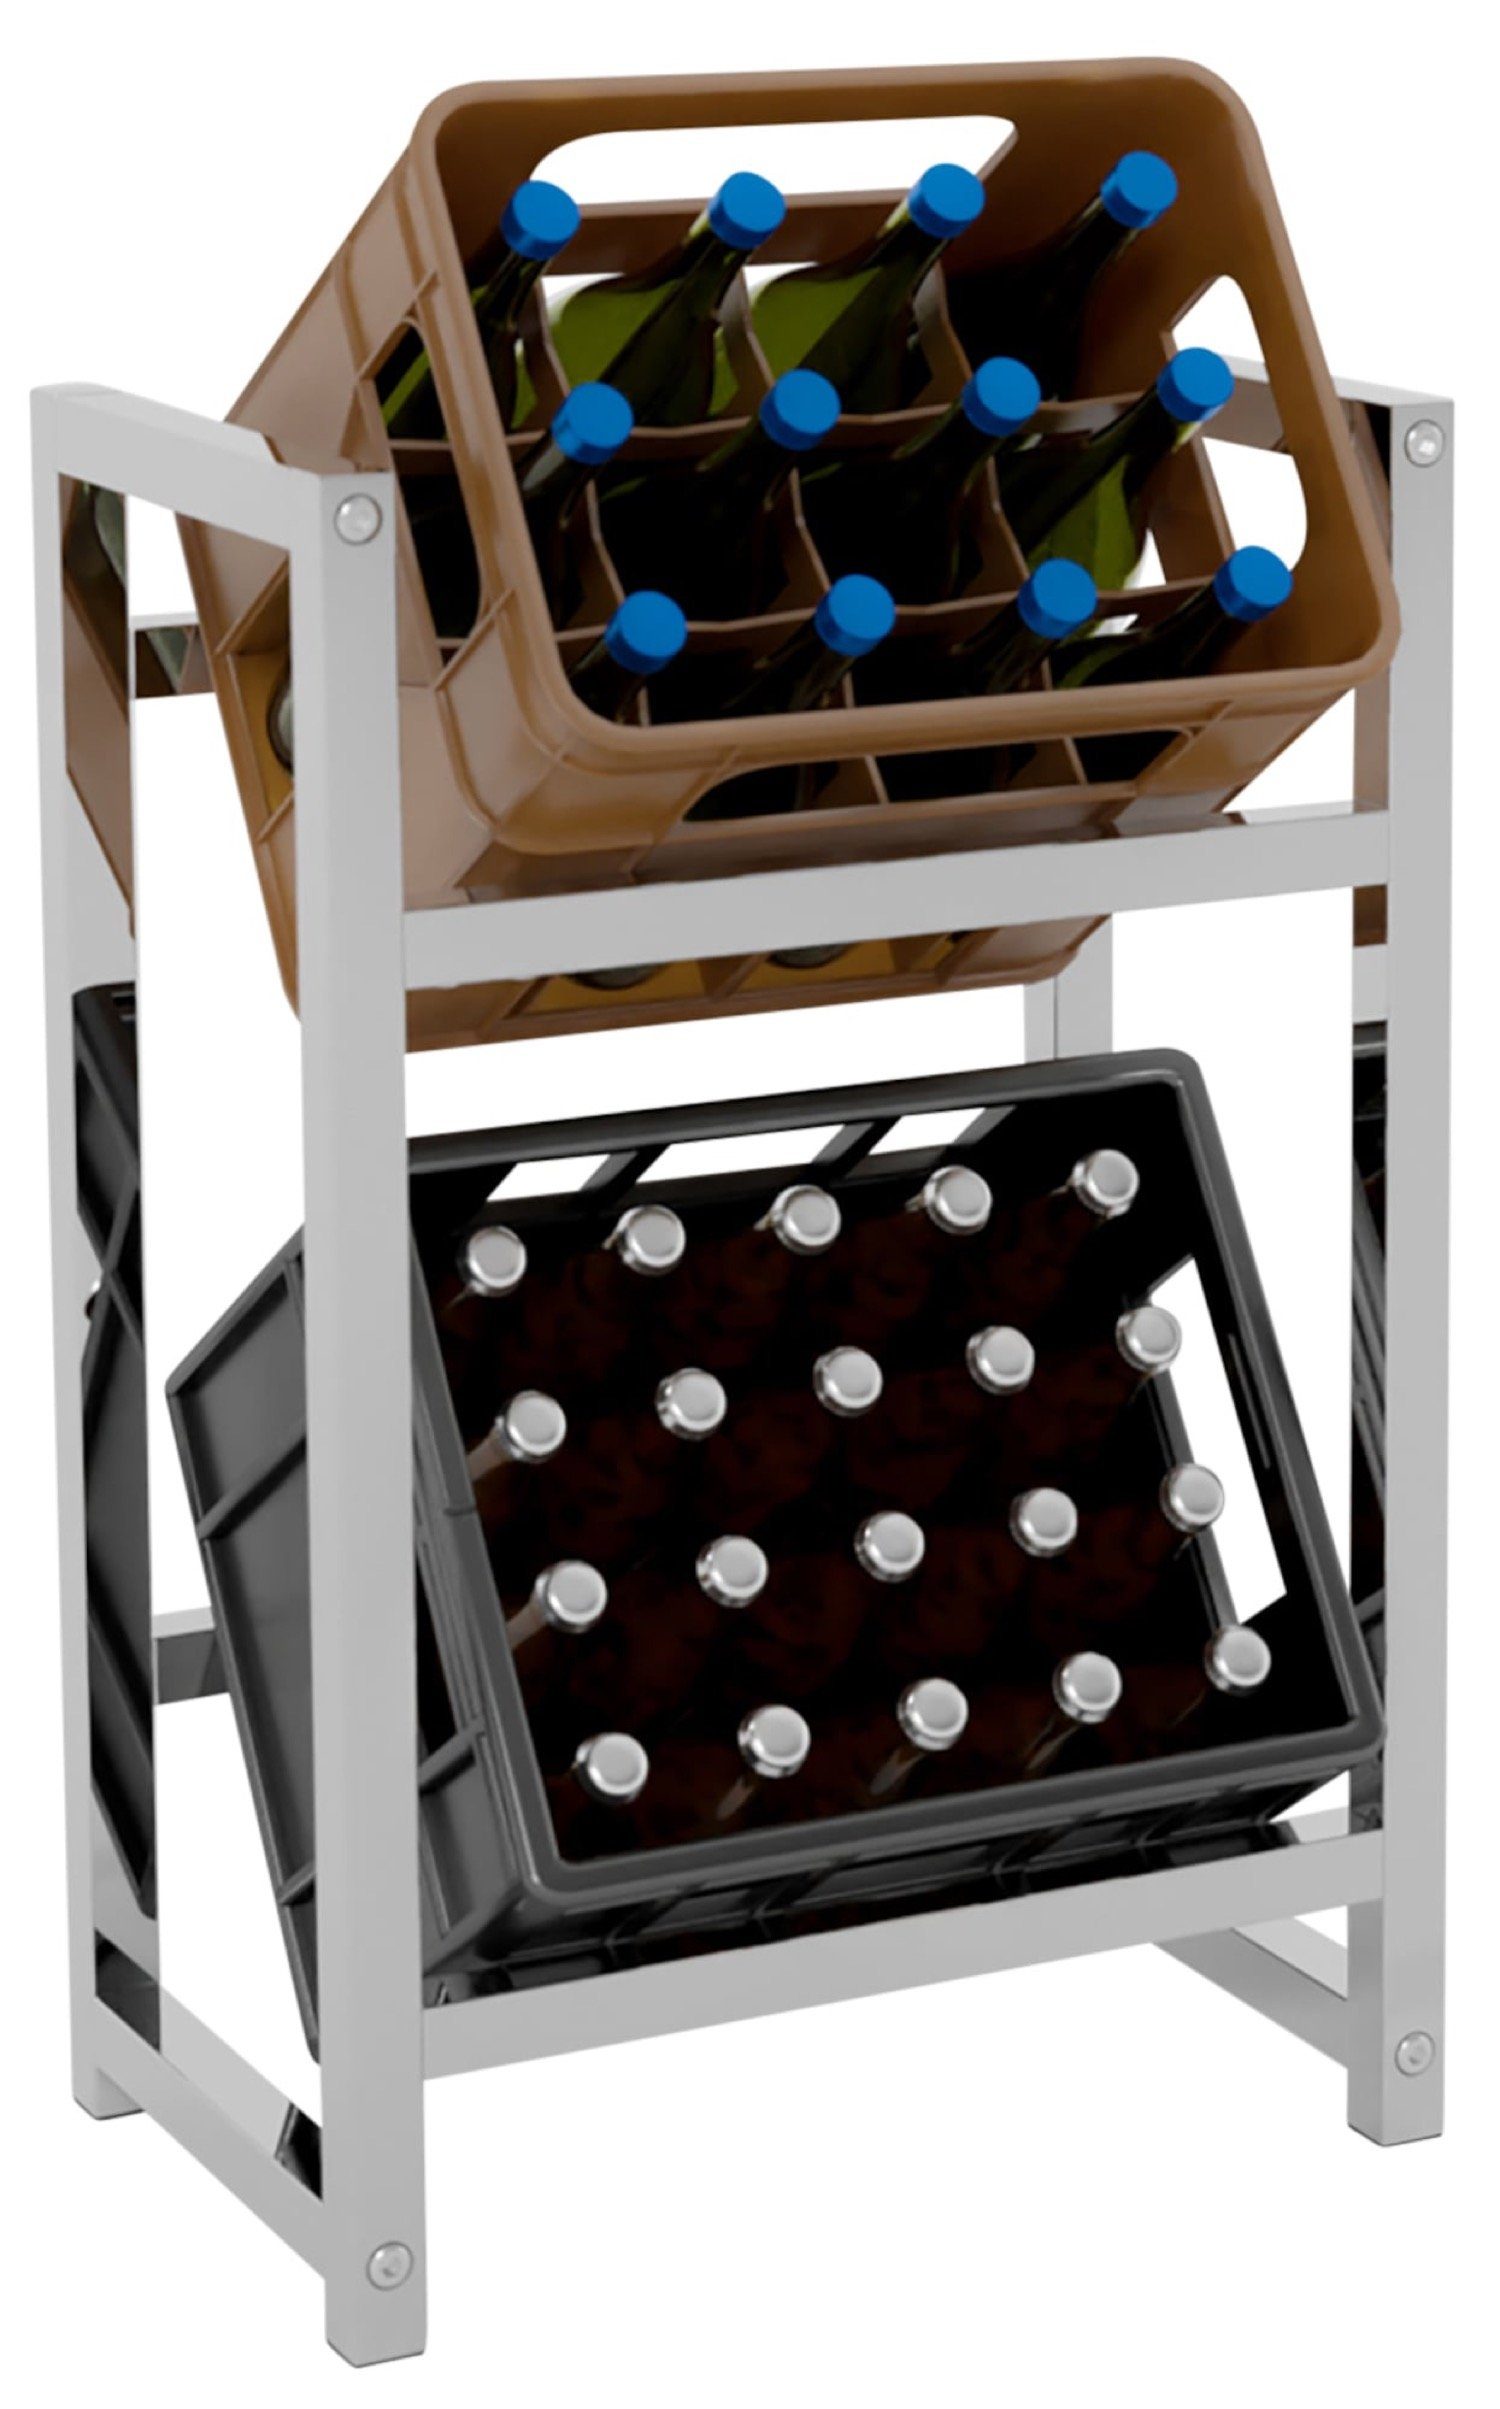 TPFLiving Standregal Getränkekistenständer Star - Getränkeregal für 2 Kisten in chrom, Kastenständer für Getränkekisten - Flaschenregal, Getränkekistenregal mit den Maßen (HxB xT): 75 x 47 x 31 cm | Standregale